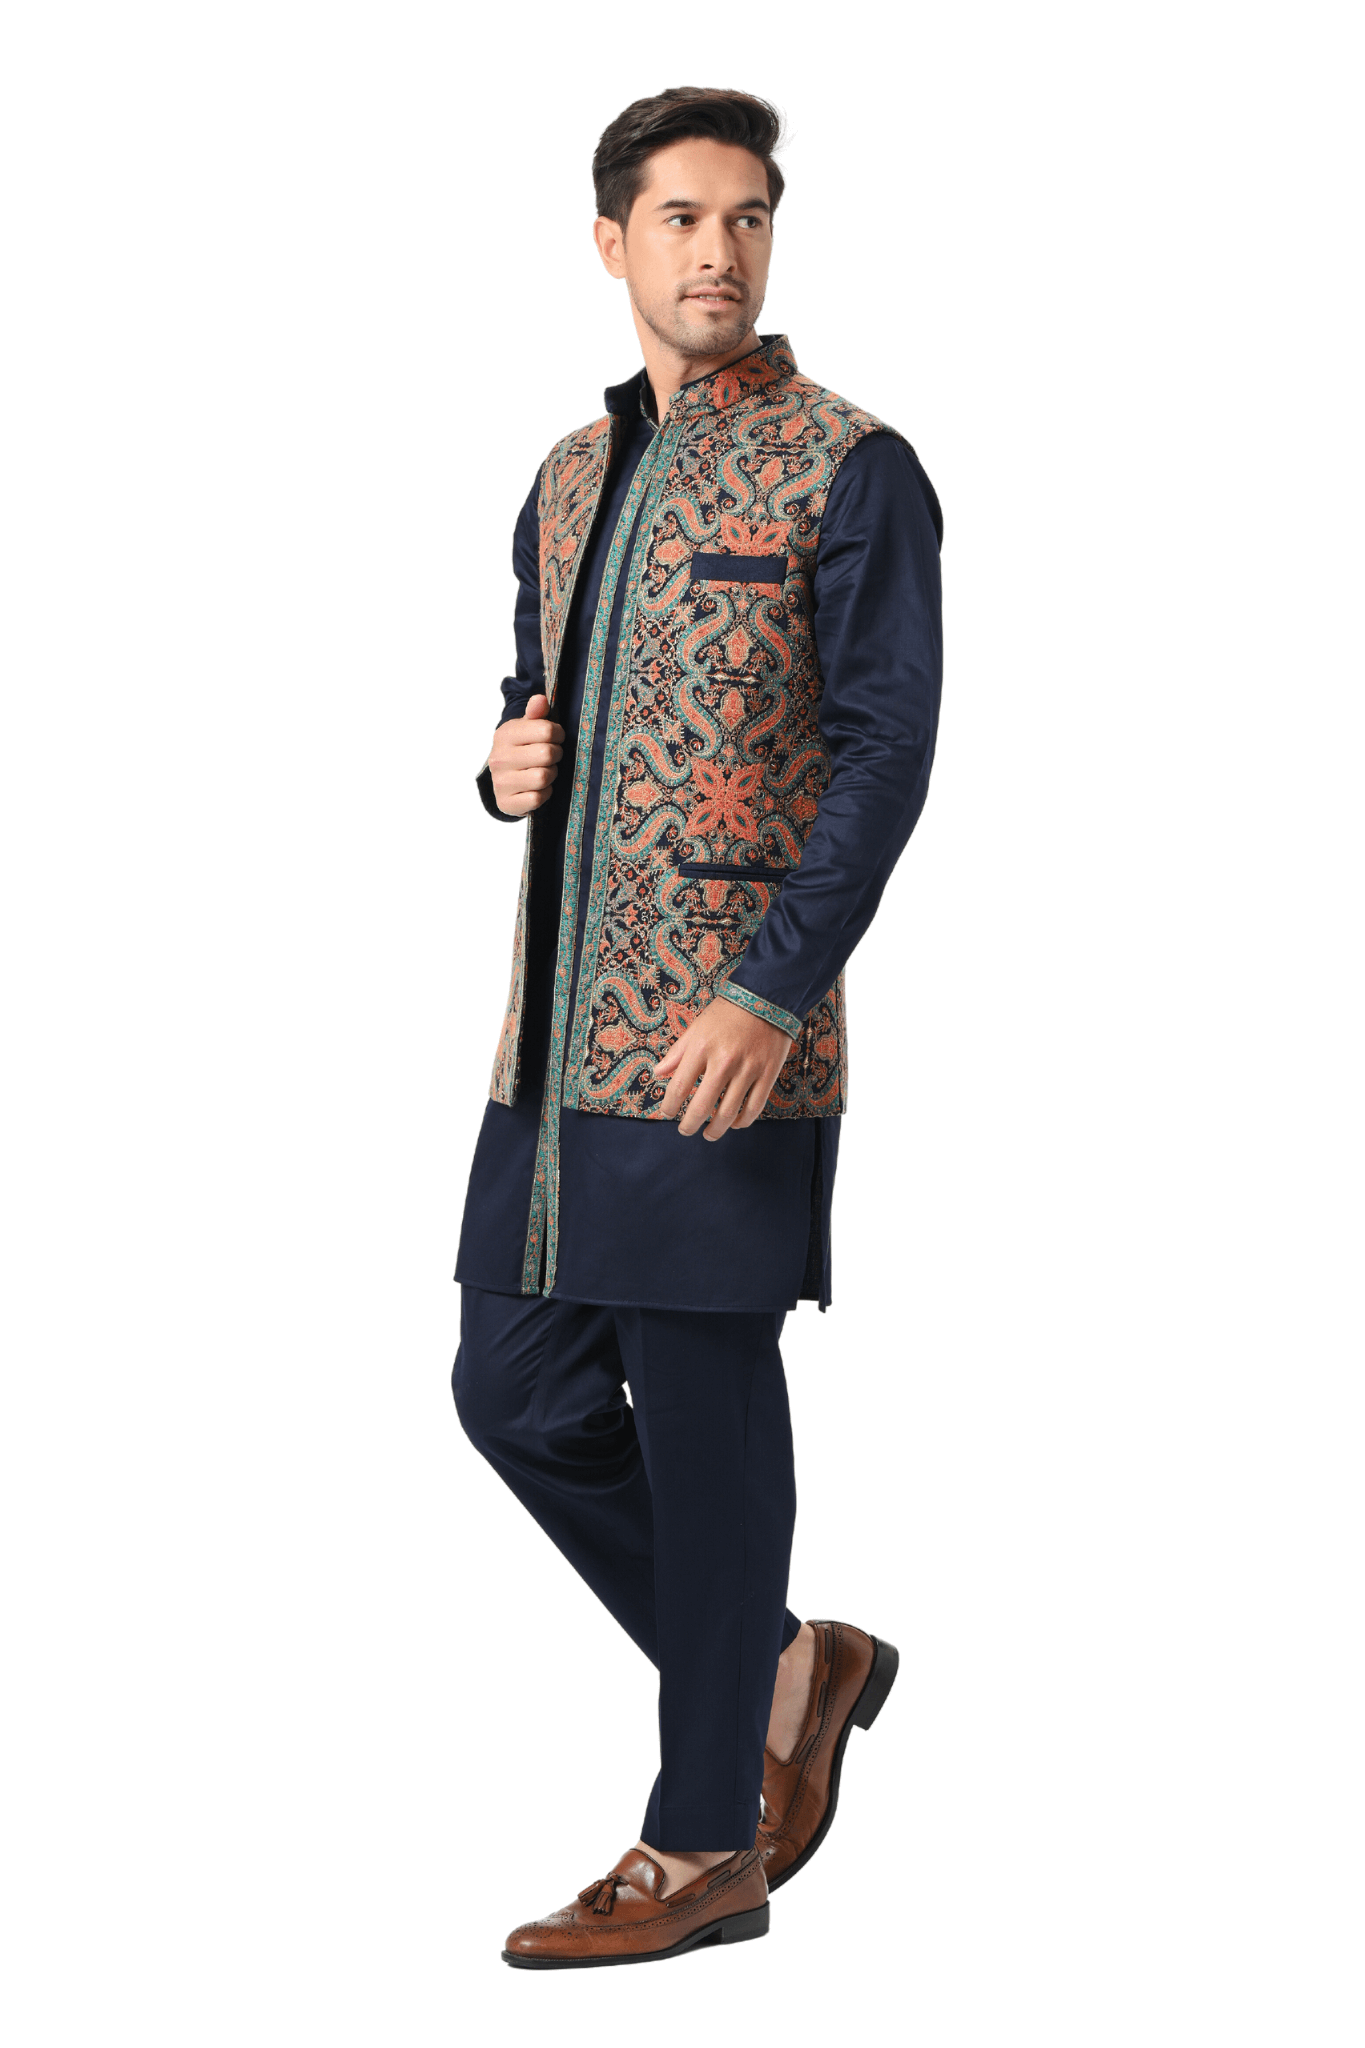 Buy Long Kashmiri Jacket, Embroidered Jacket, Indian Traditional Jacket,  Boho Jacket, Long Coat, Paisley Embroidered Jacket, Kashmiri Coat Online in  India - Etsy